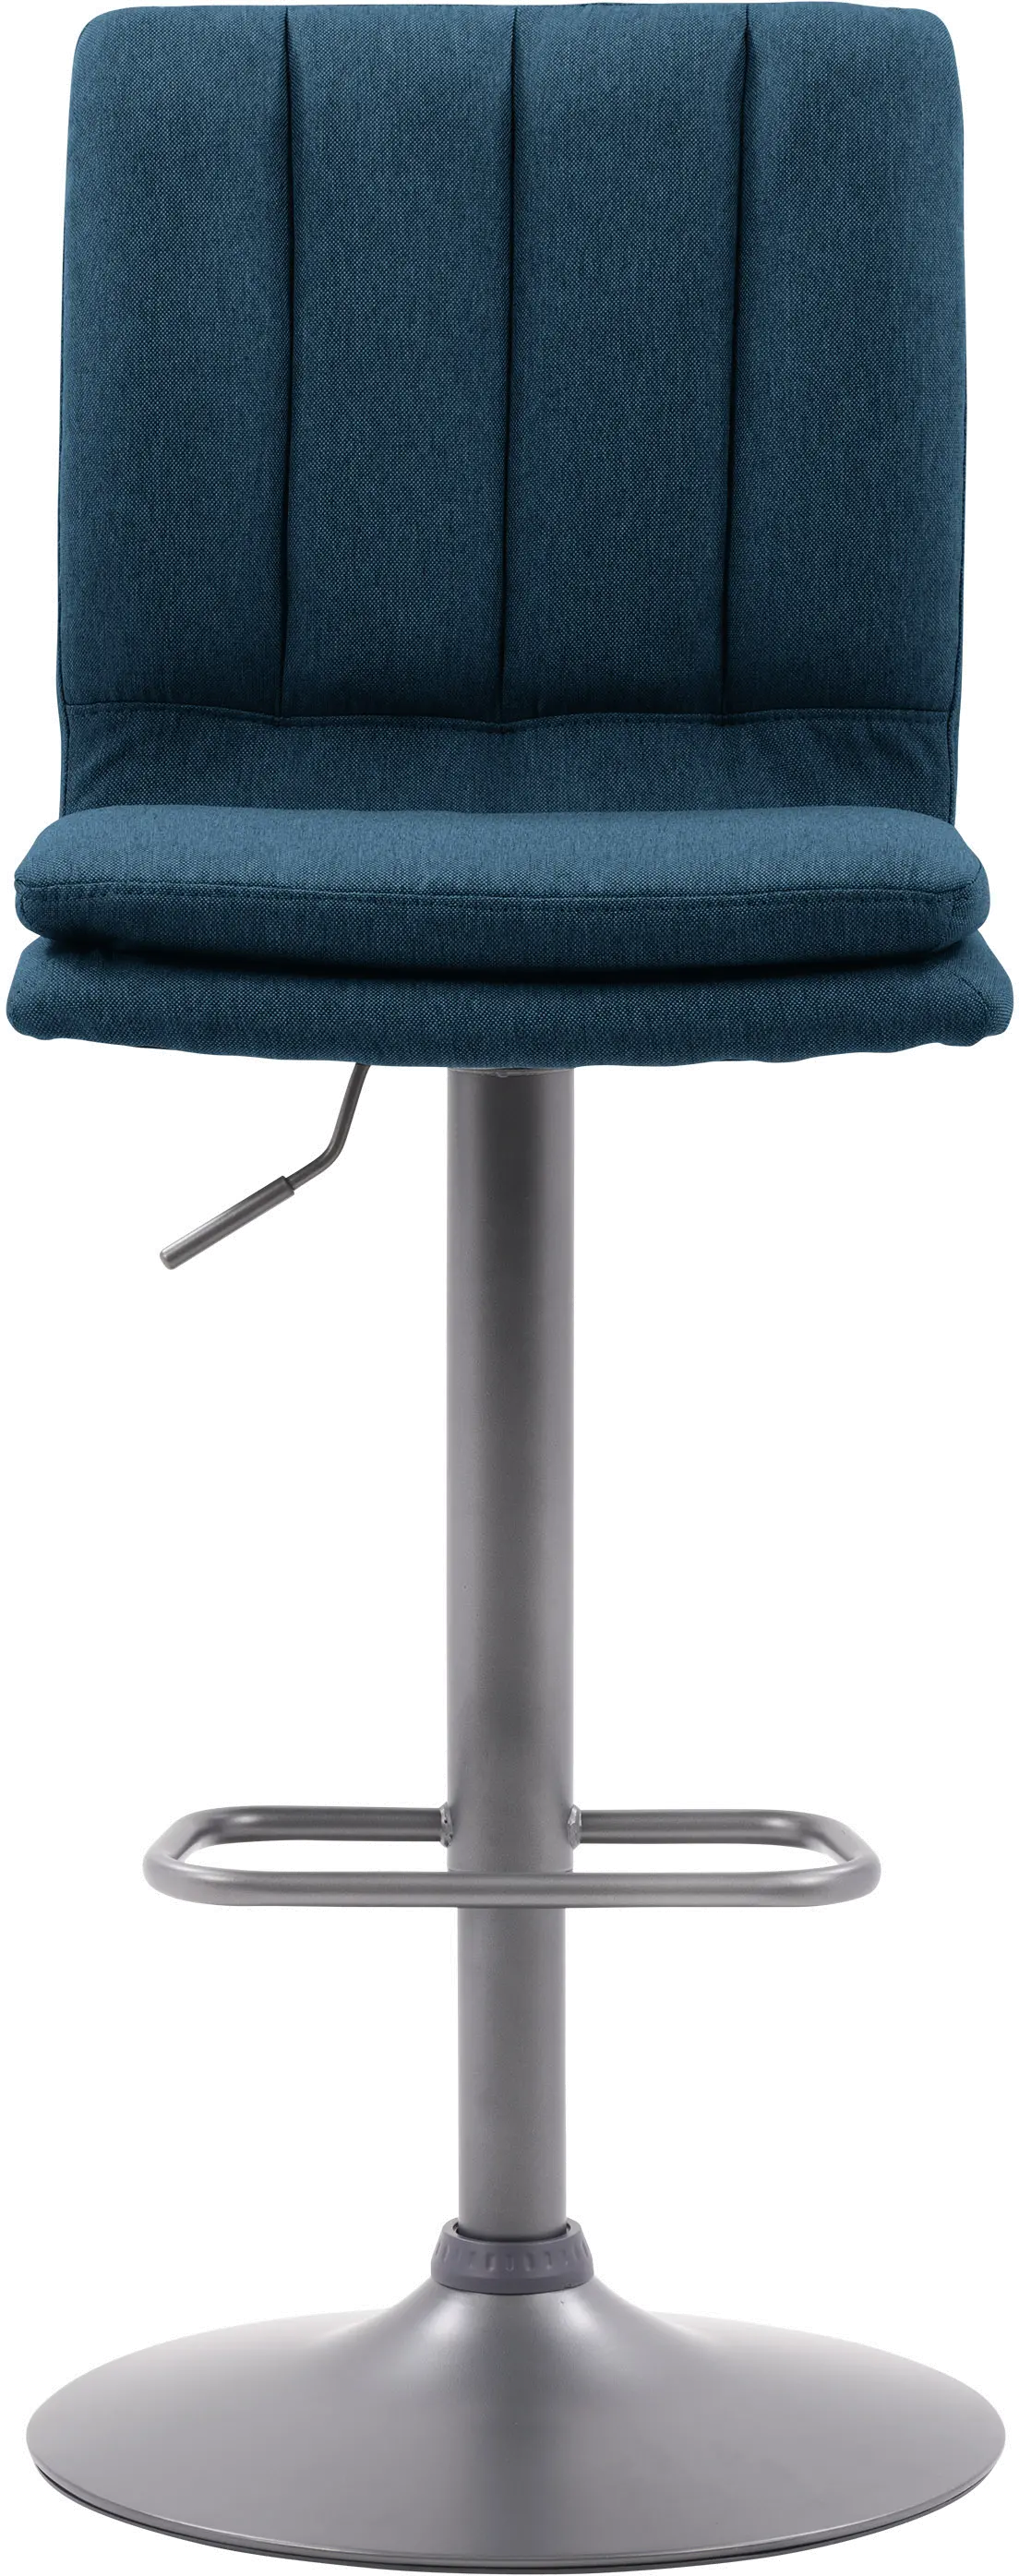 Palmer Blue Tufted High Back Adjustable Barstool, Set of 2